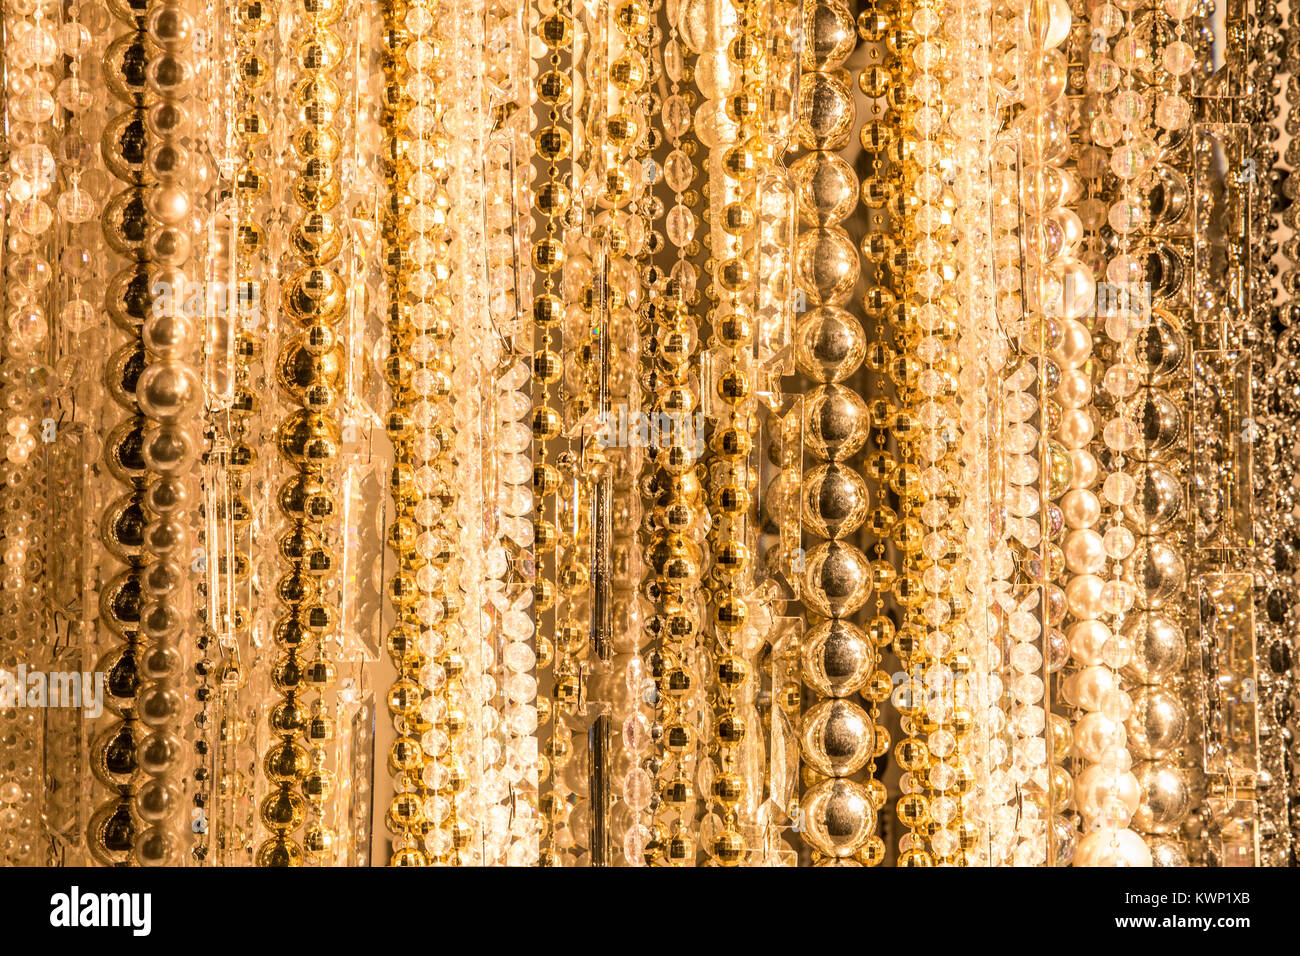 La texture à partir de chaînes de différentes perles d'or Banque D'Images